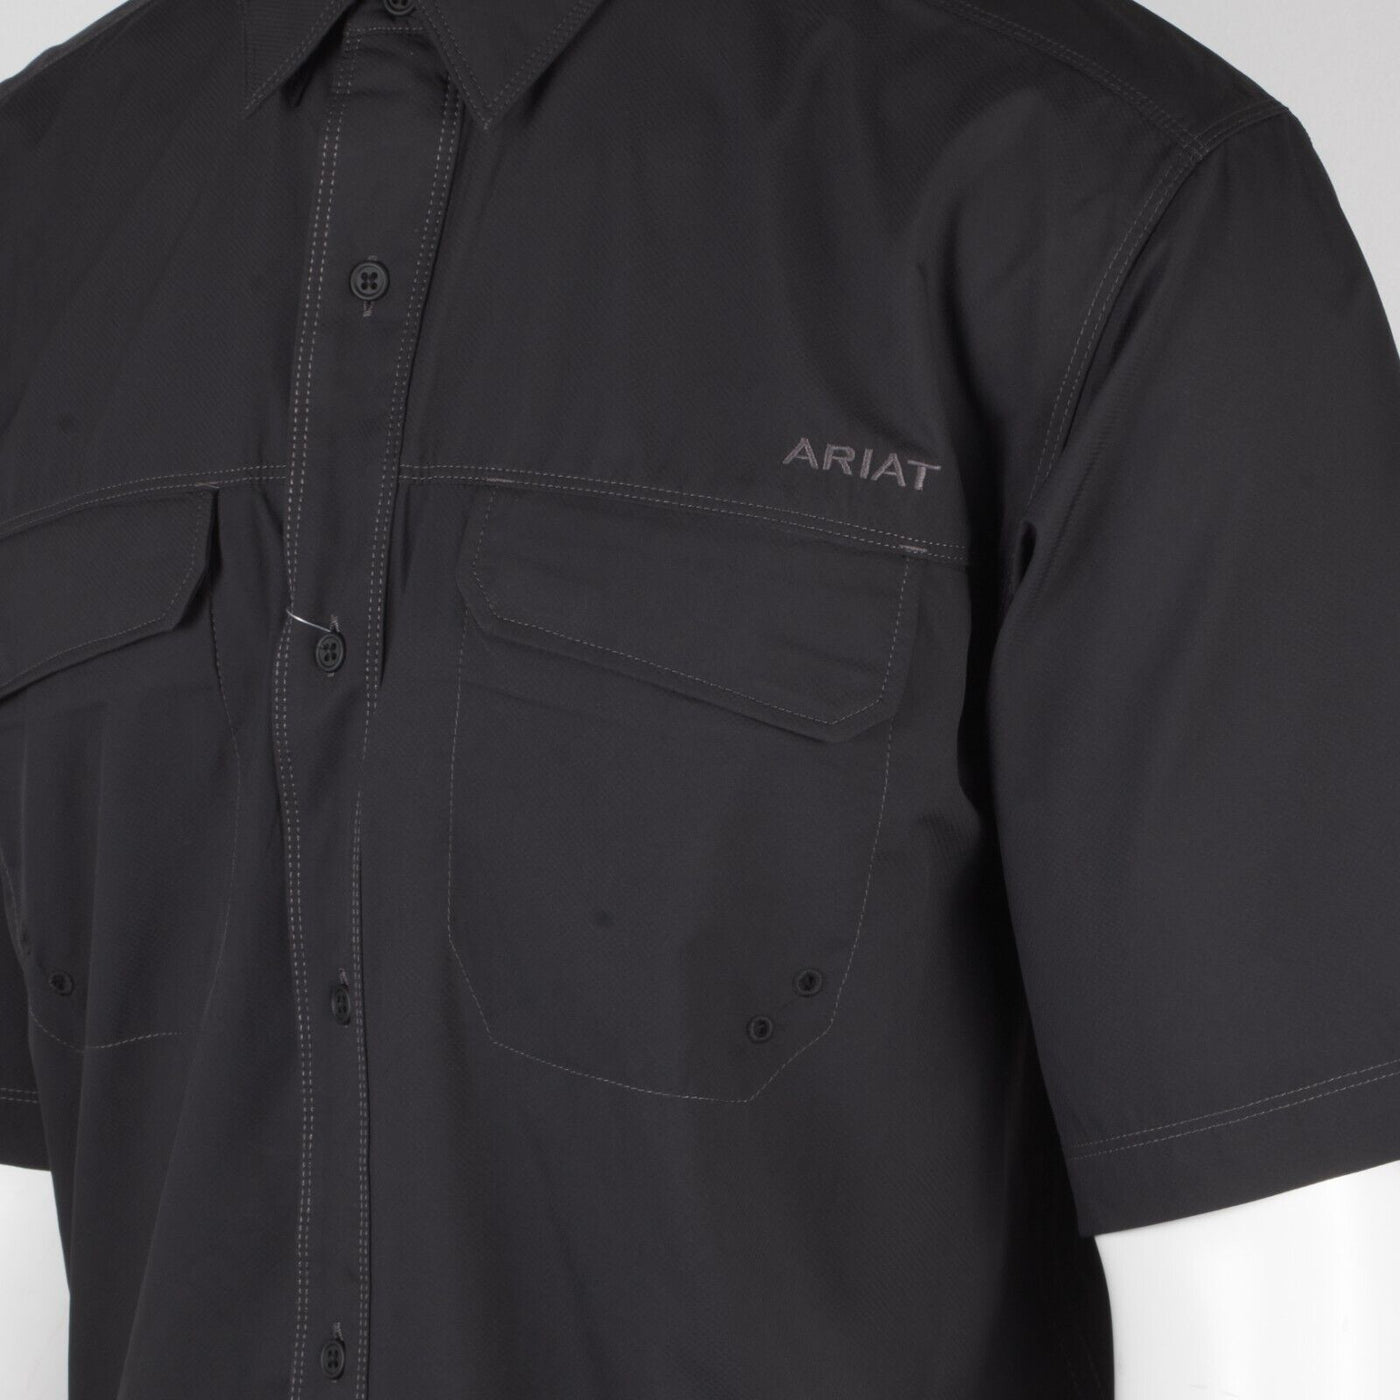 Ariat Men's Black Venttek Climate Tek Cooling UPF 50 S/S Woven Shirt (S03)